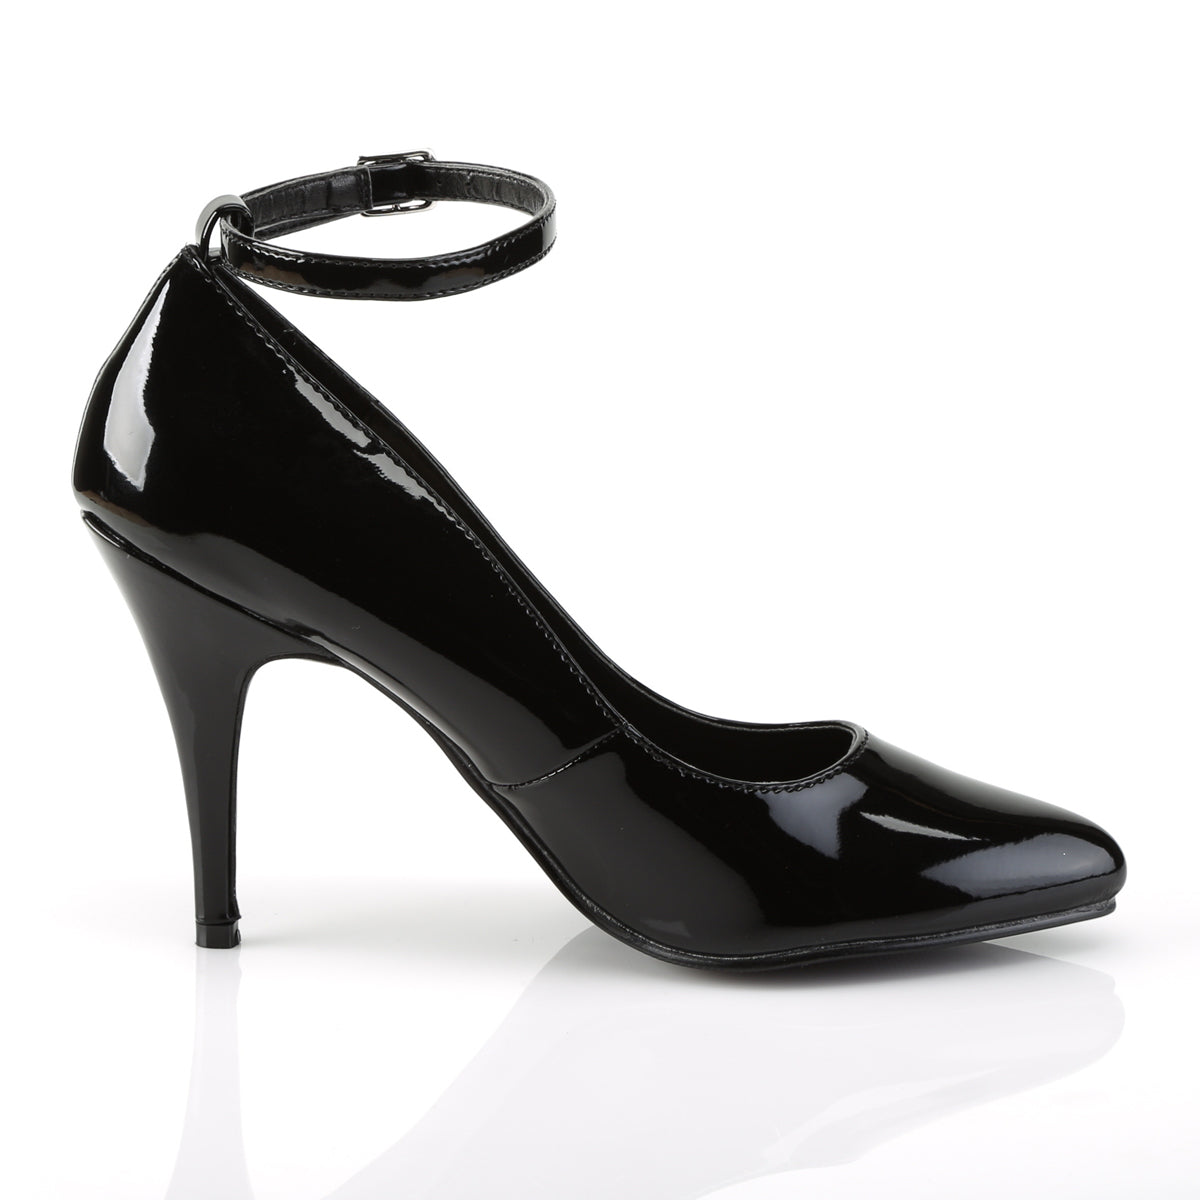 VANITY-431 Pleaser Shoe 4" Heel Black Patent Fetish Footwear-Pleaser- Sexy Shoes Fetish Heels